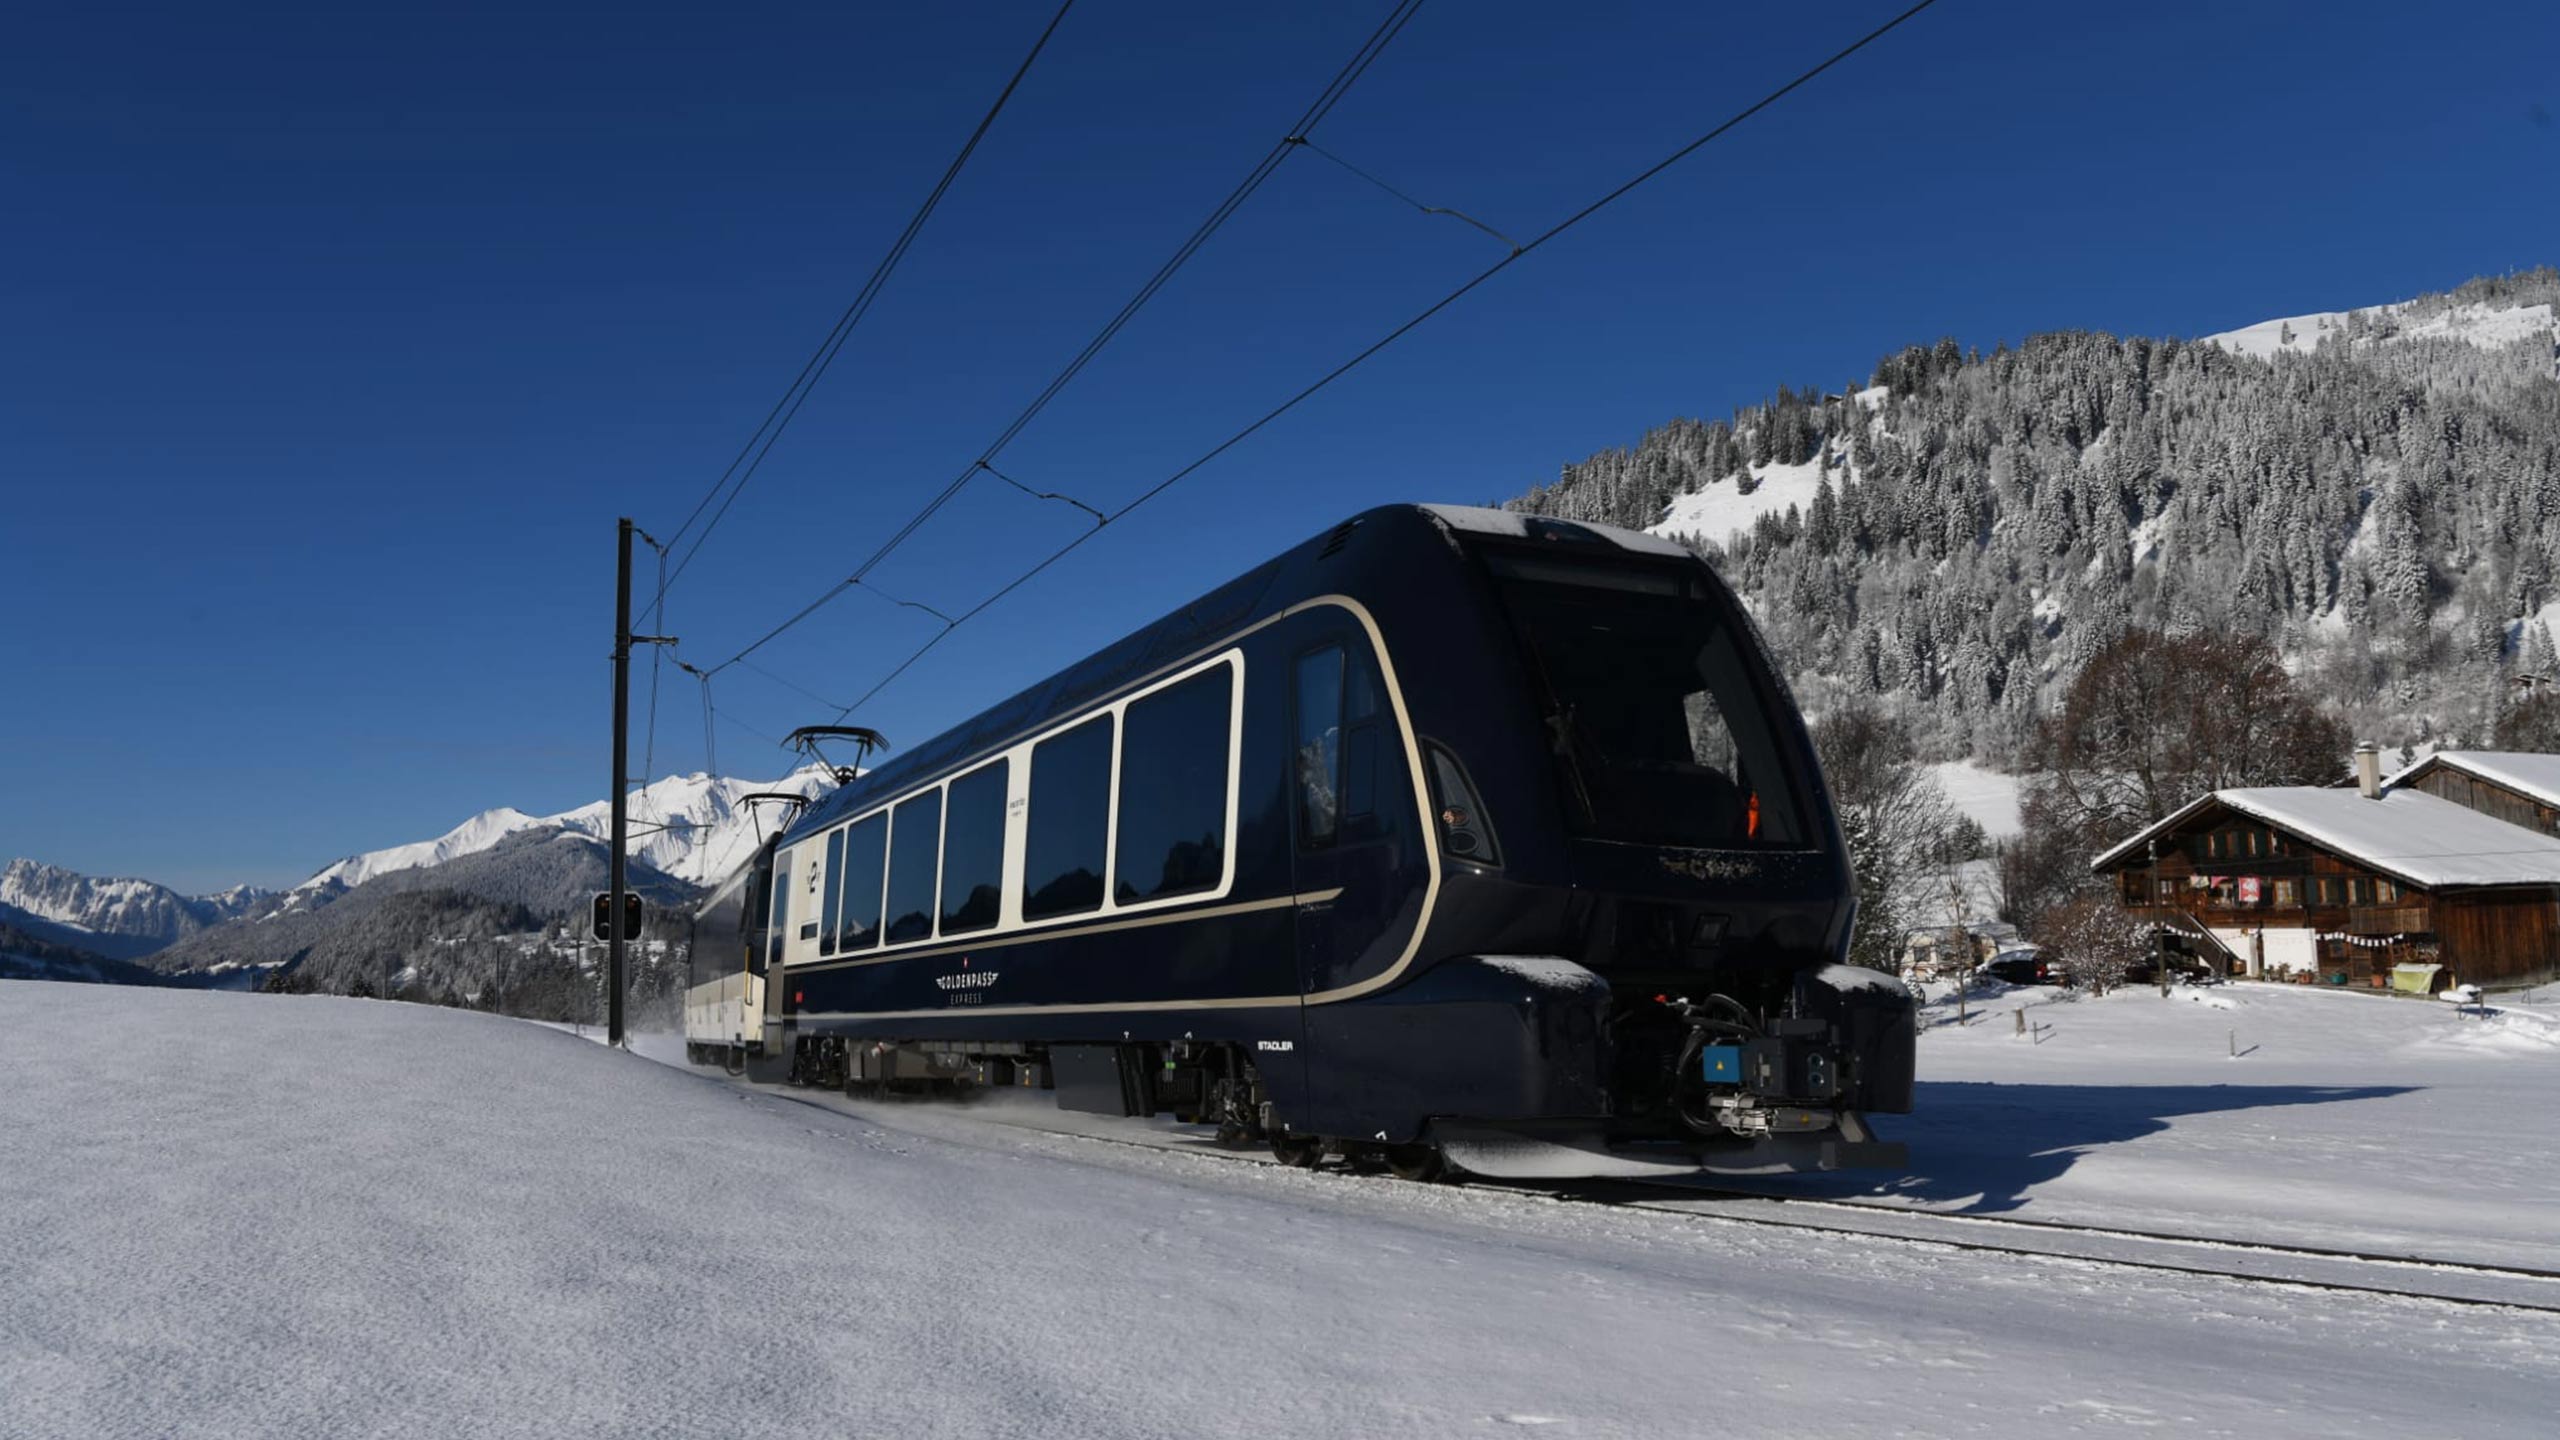 golden-pass-express-winter-schnee-unterwegs.jpg